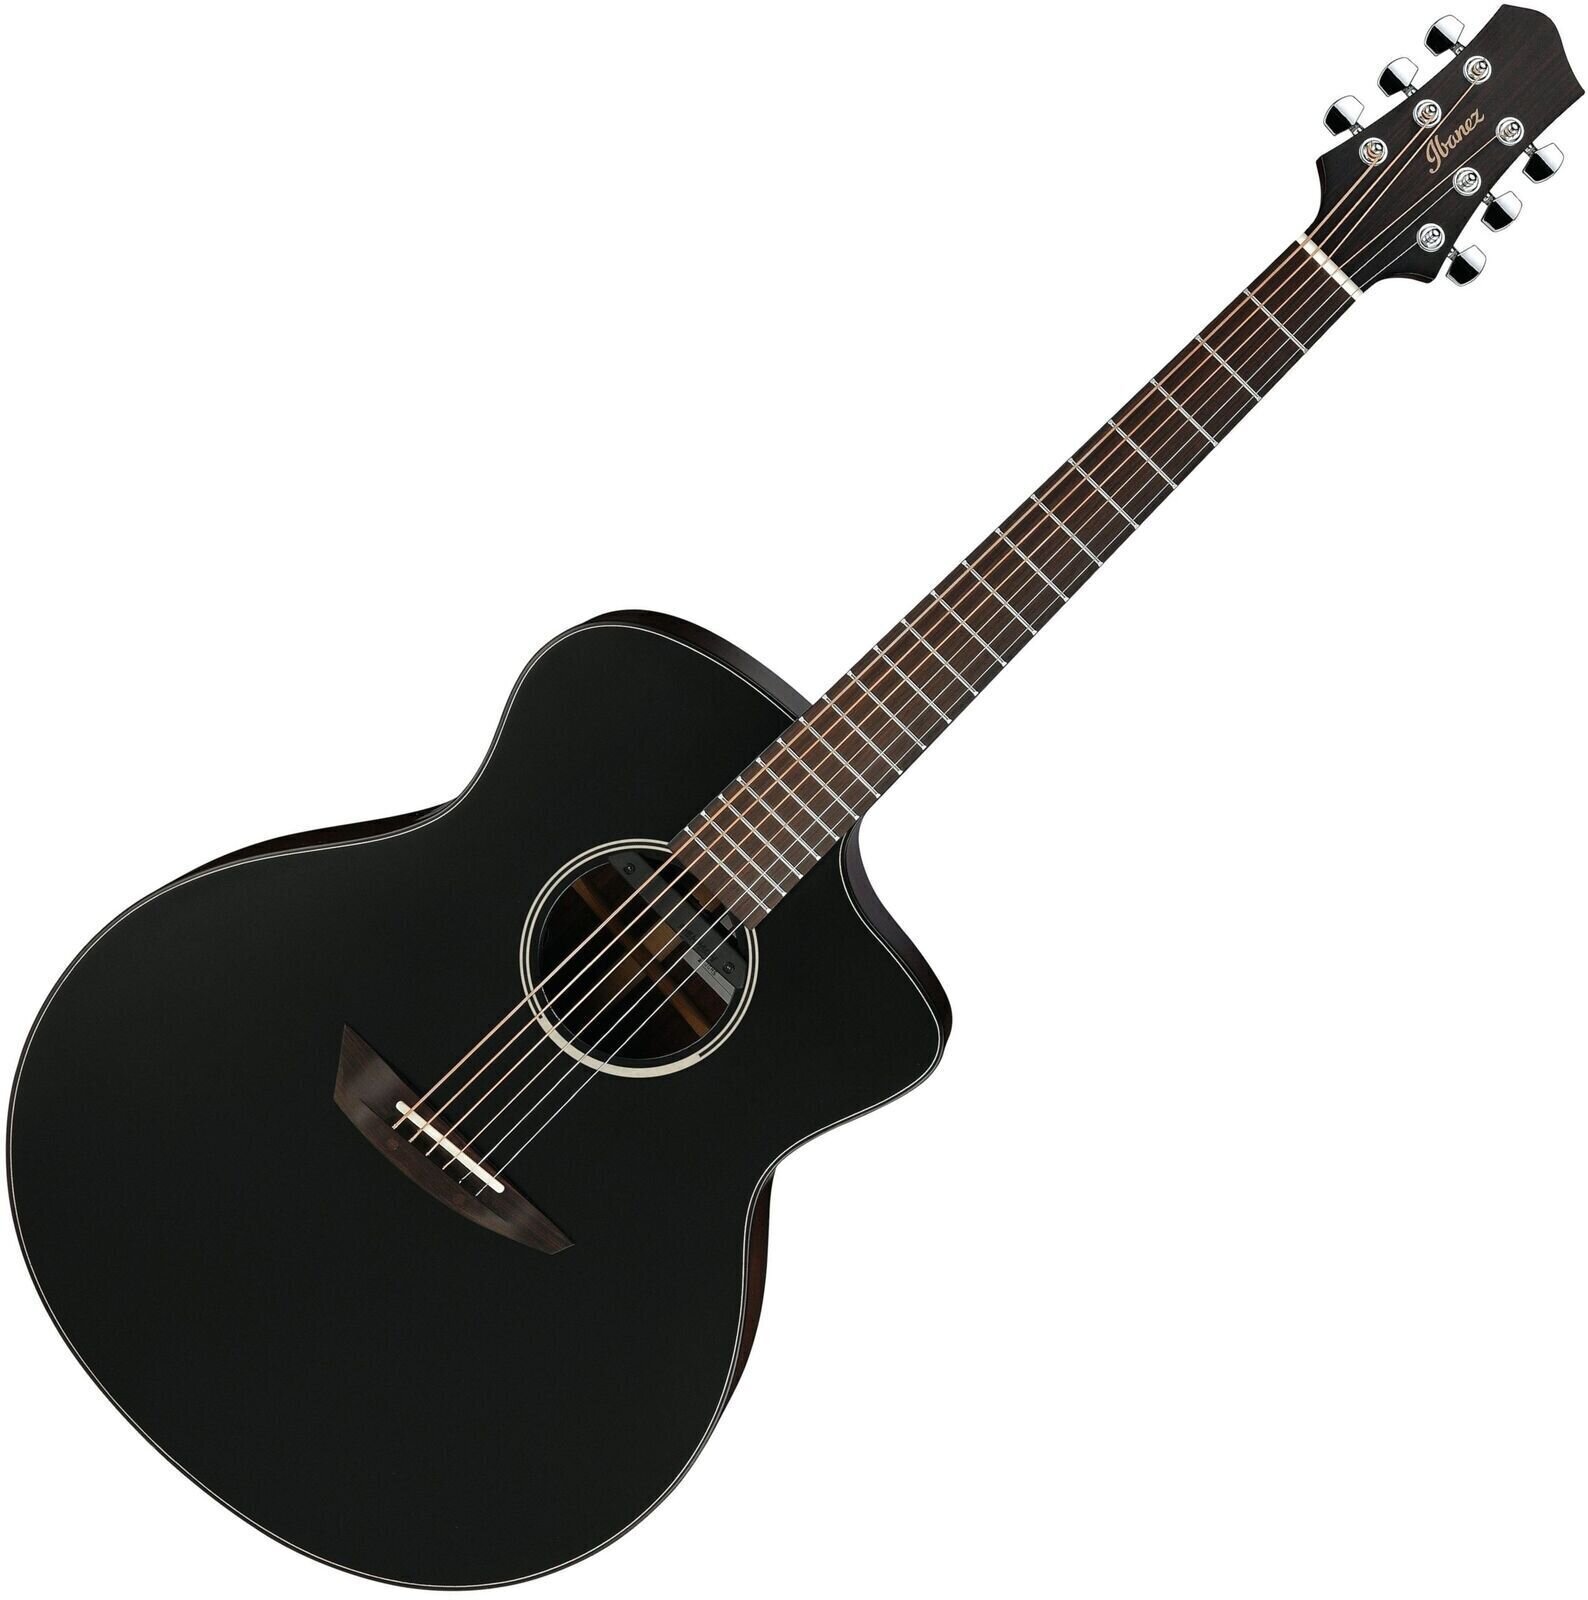 Jumbo elektro-akoestische gitaar Ibanez JGM5-BSN Black Satin-Natural